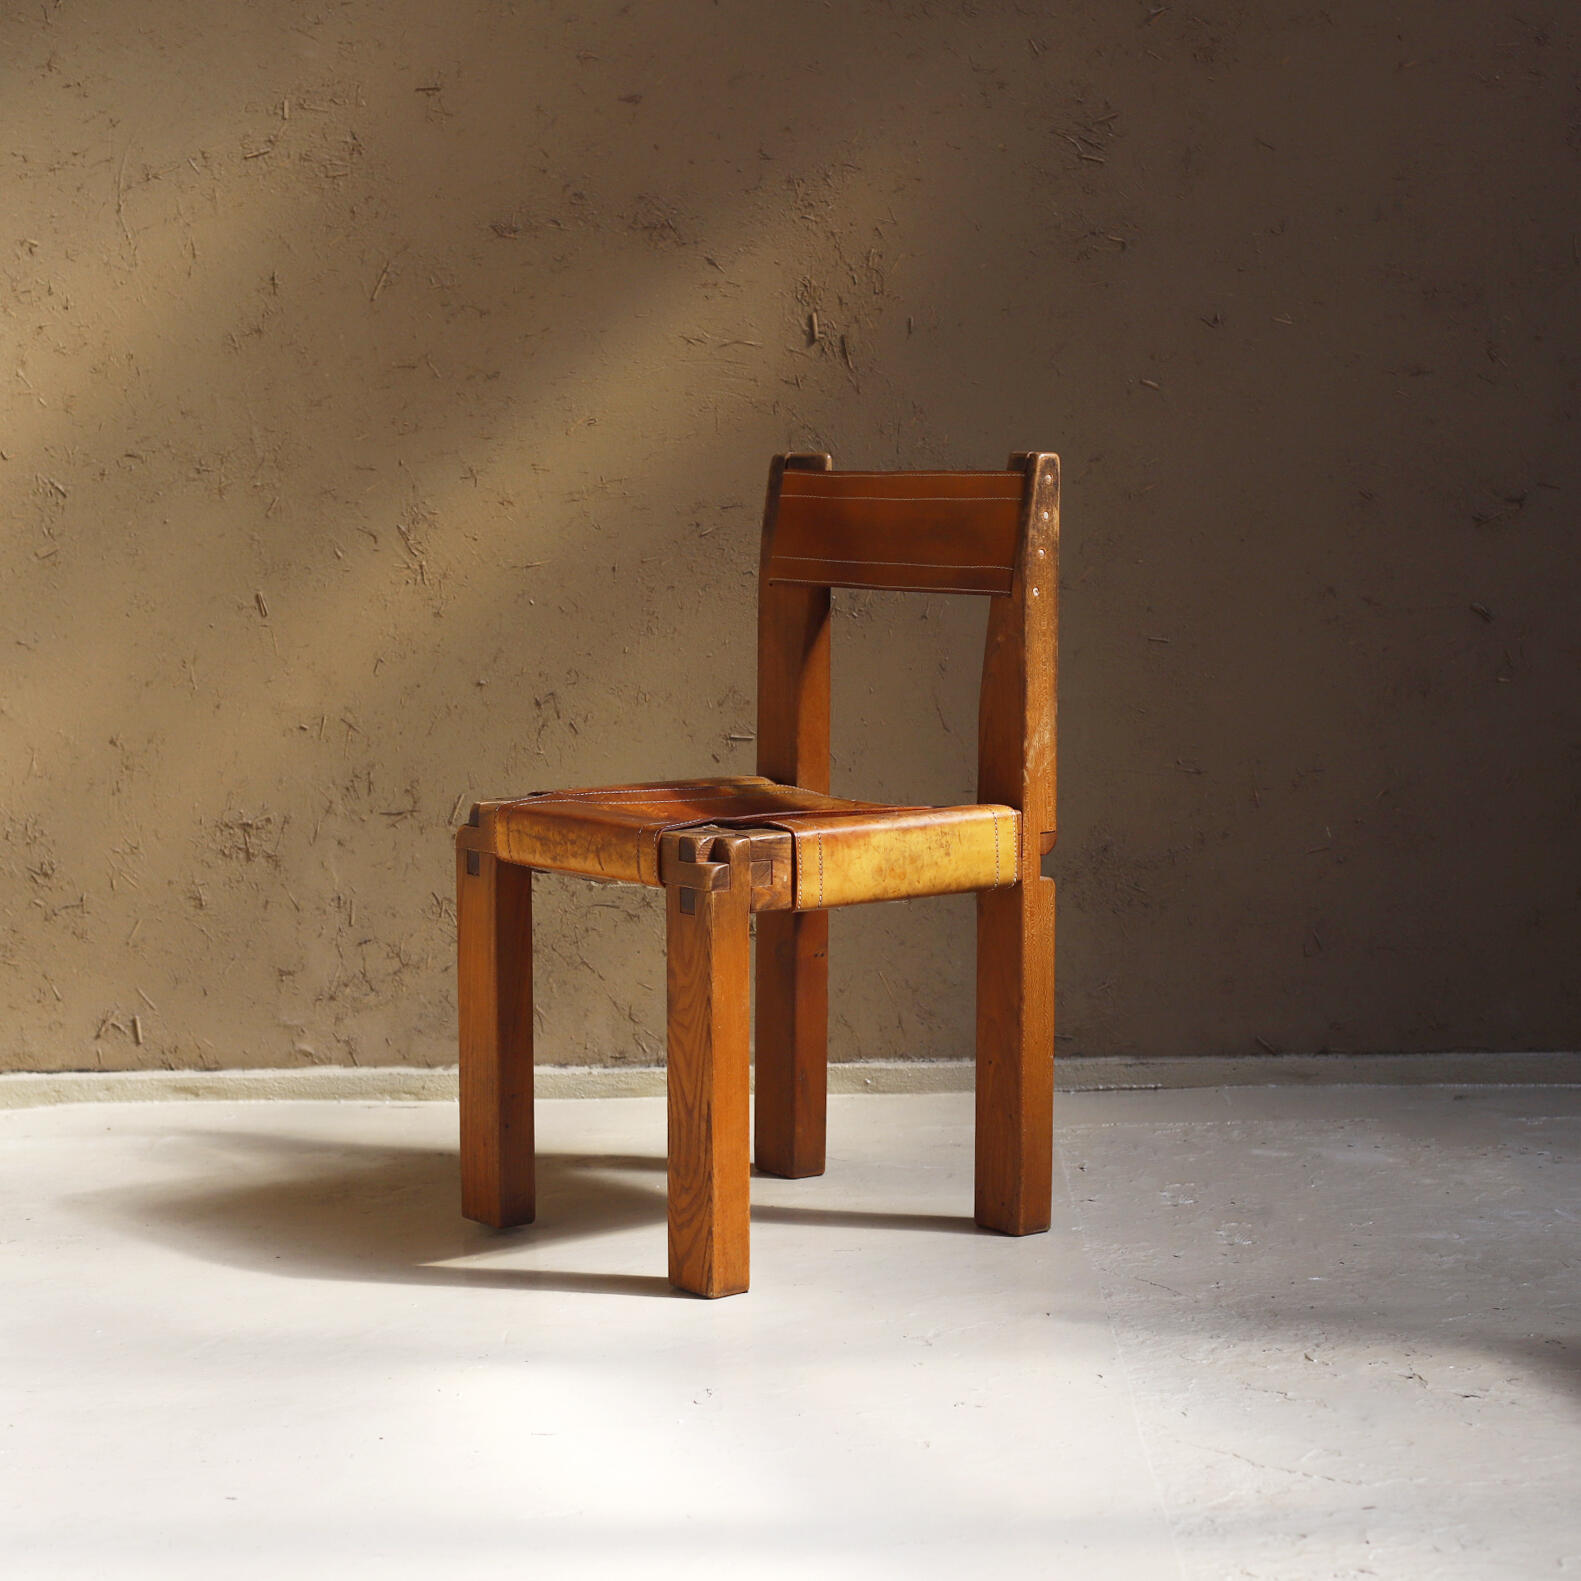 Model S11 Chair by Pierre Chapo - Objet d' art